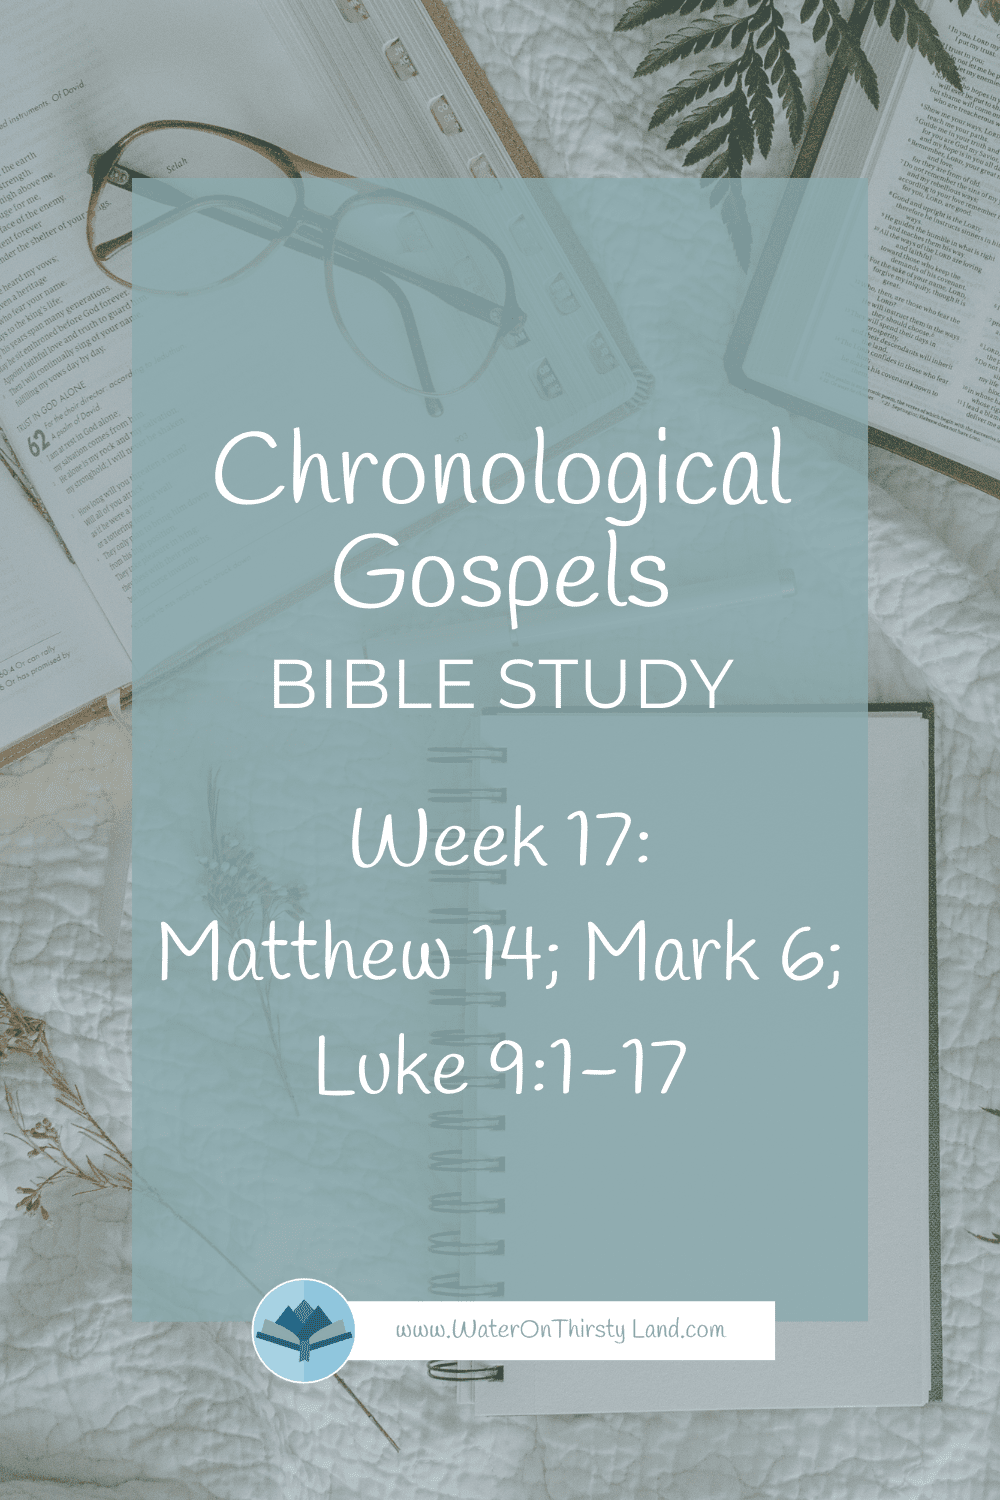 Chronological Gospels Week 17 Matthew 14; Mark 6; Luke 9:1-17